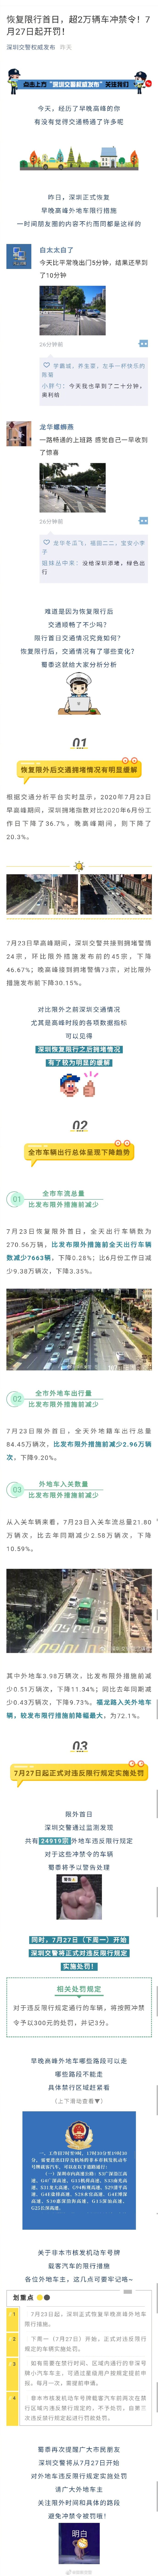 深圳交警警告 恢复限行当日超2万辆车冲禁